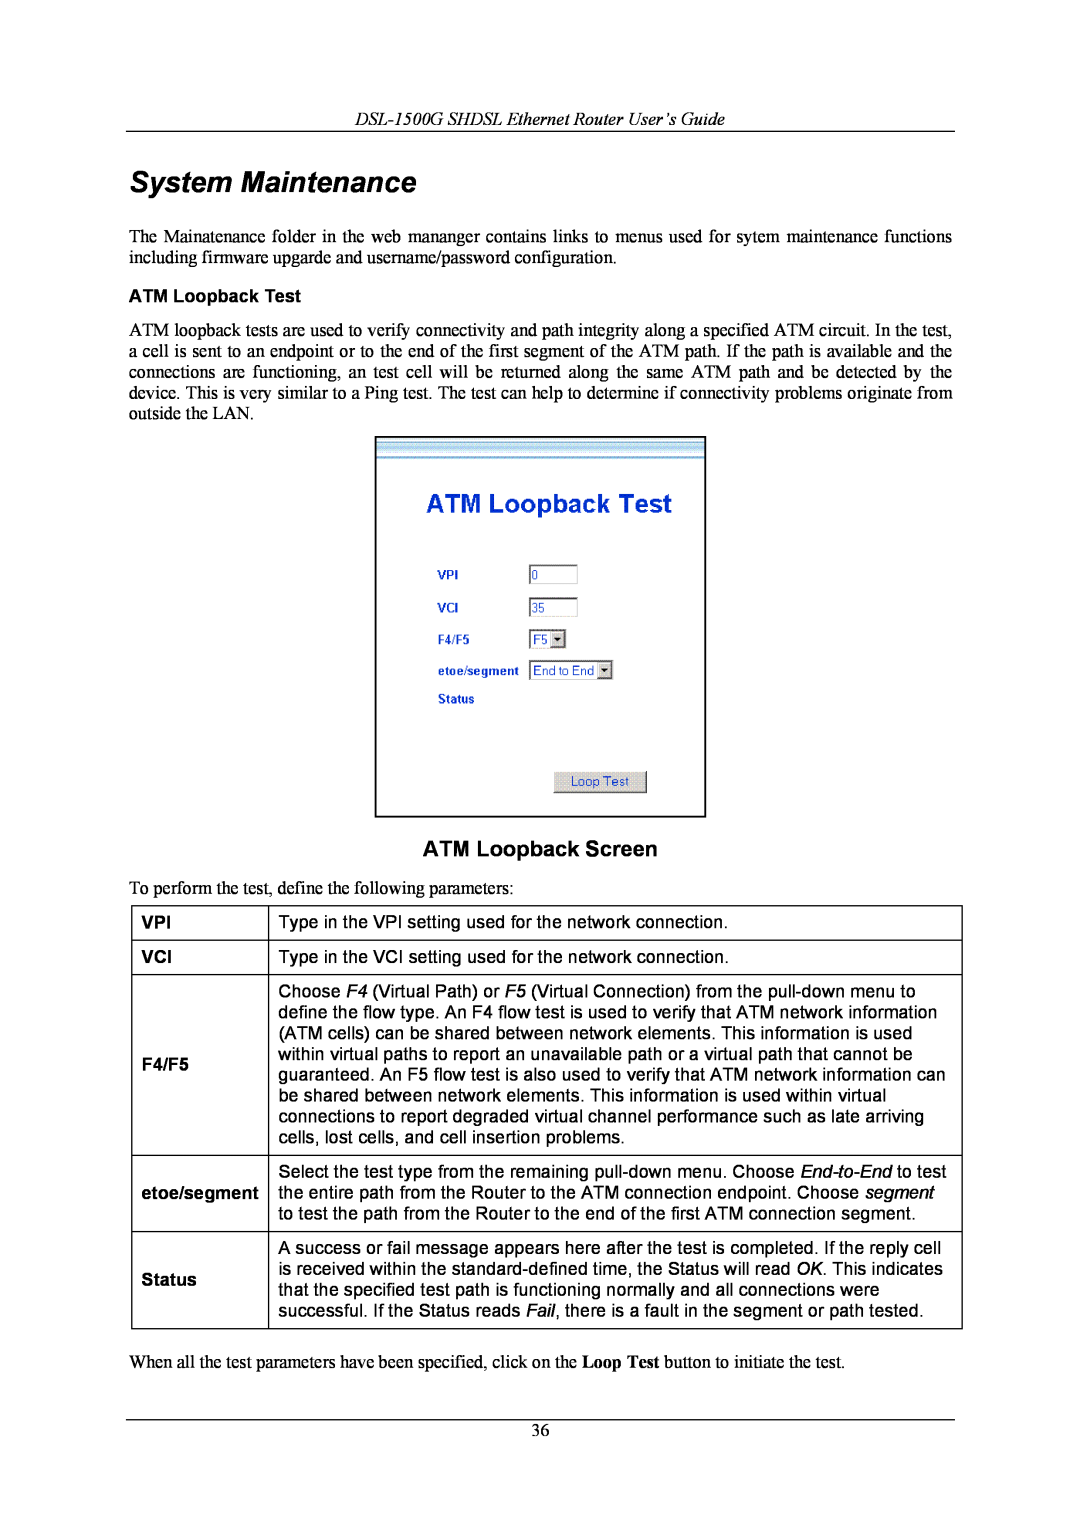 D-Link manual System Maintenance, ATM Loopback Screen, DSL-1500G SHDSL Ethernet Router User’s Guide 